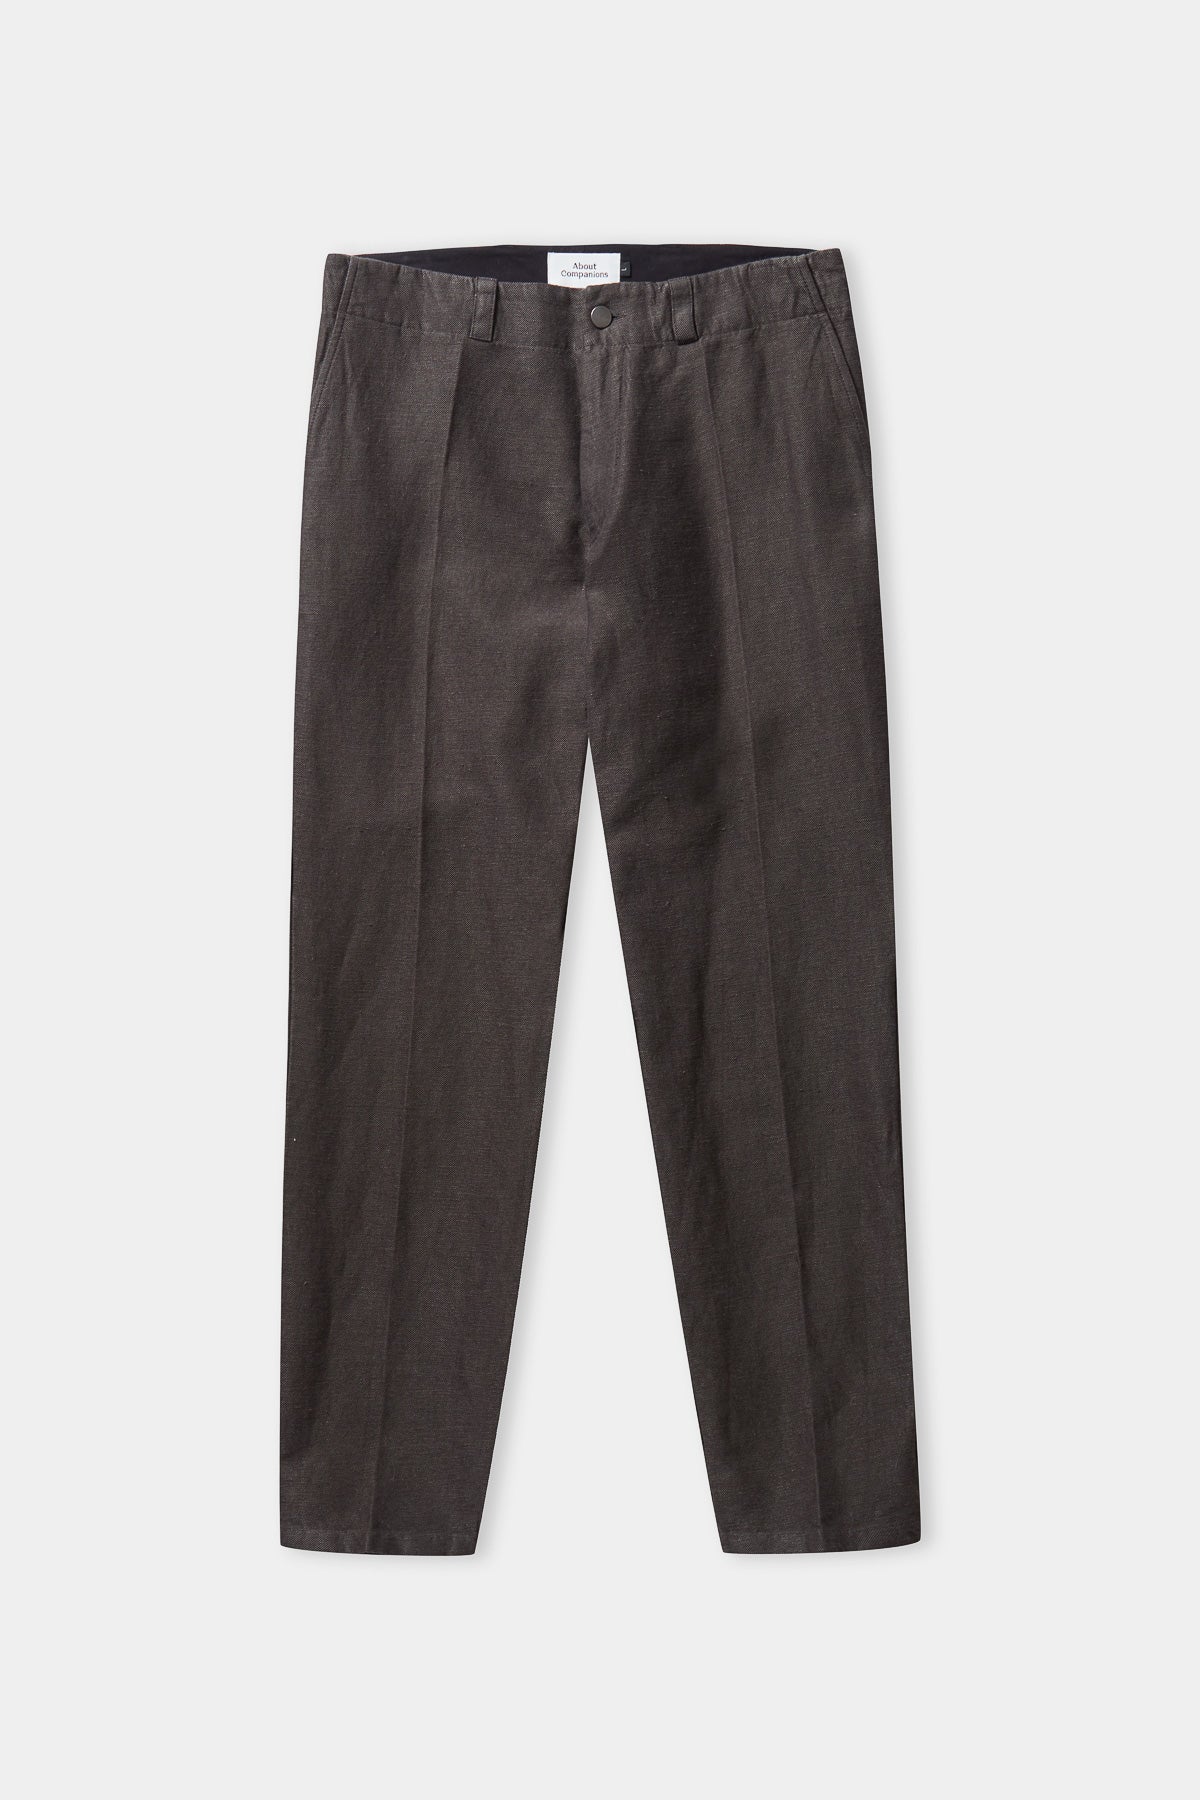 JOSTHA trousers winter linen steel